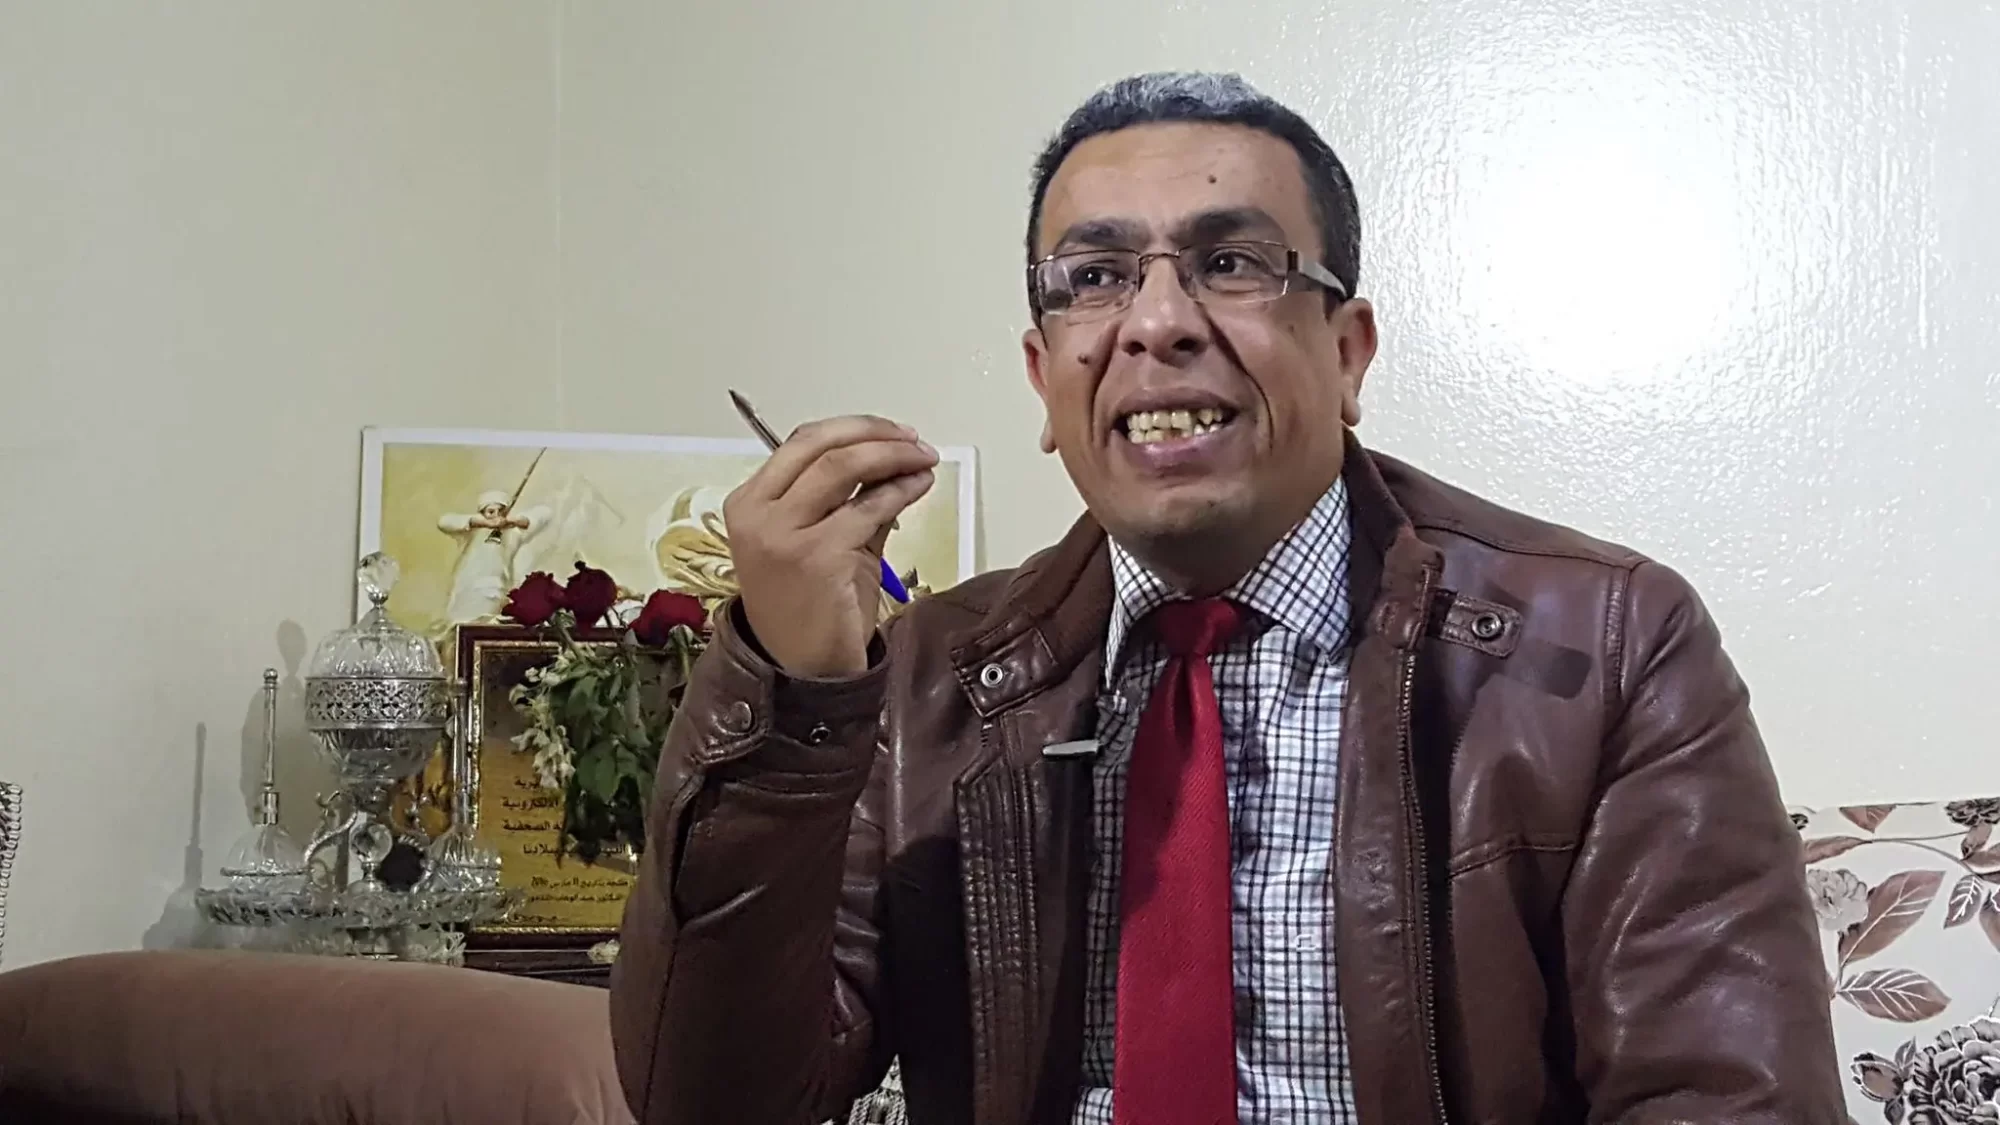 الصحفي المغربي حميد المهداوي لا يزال رهن الاعتقال.. أدمن حسابه يثير جدلا